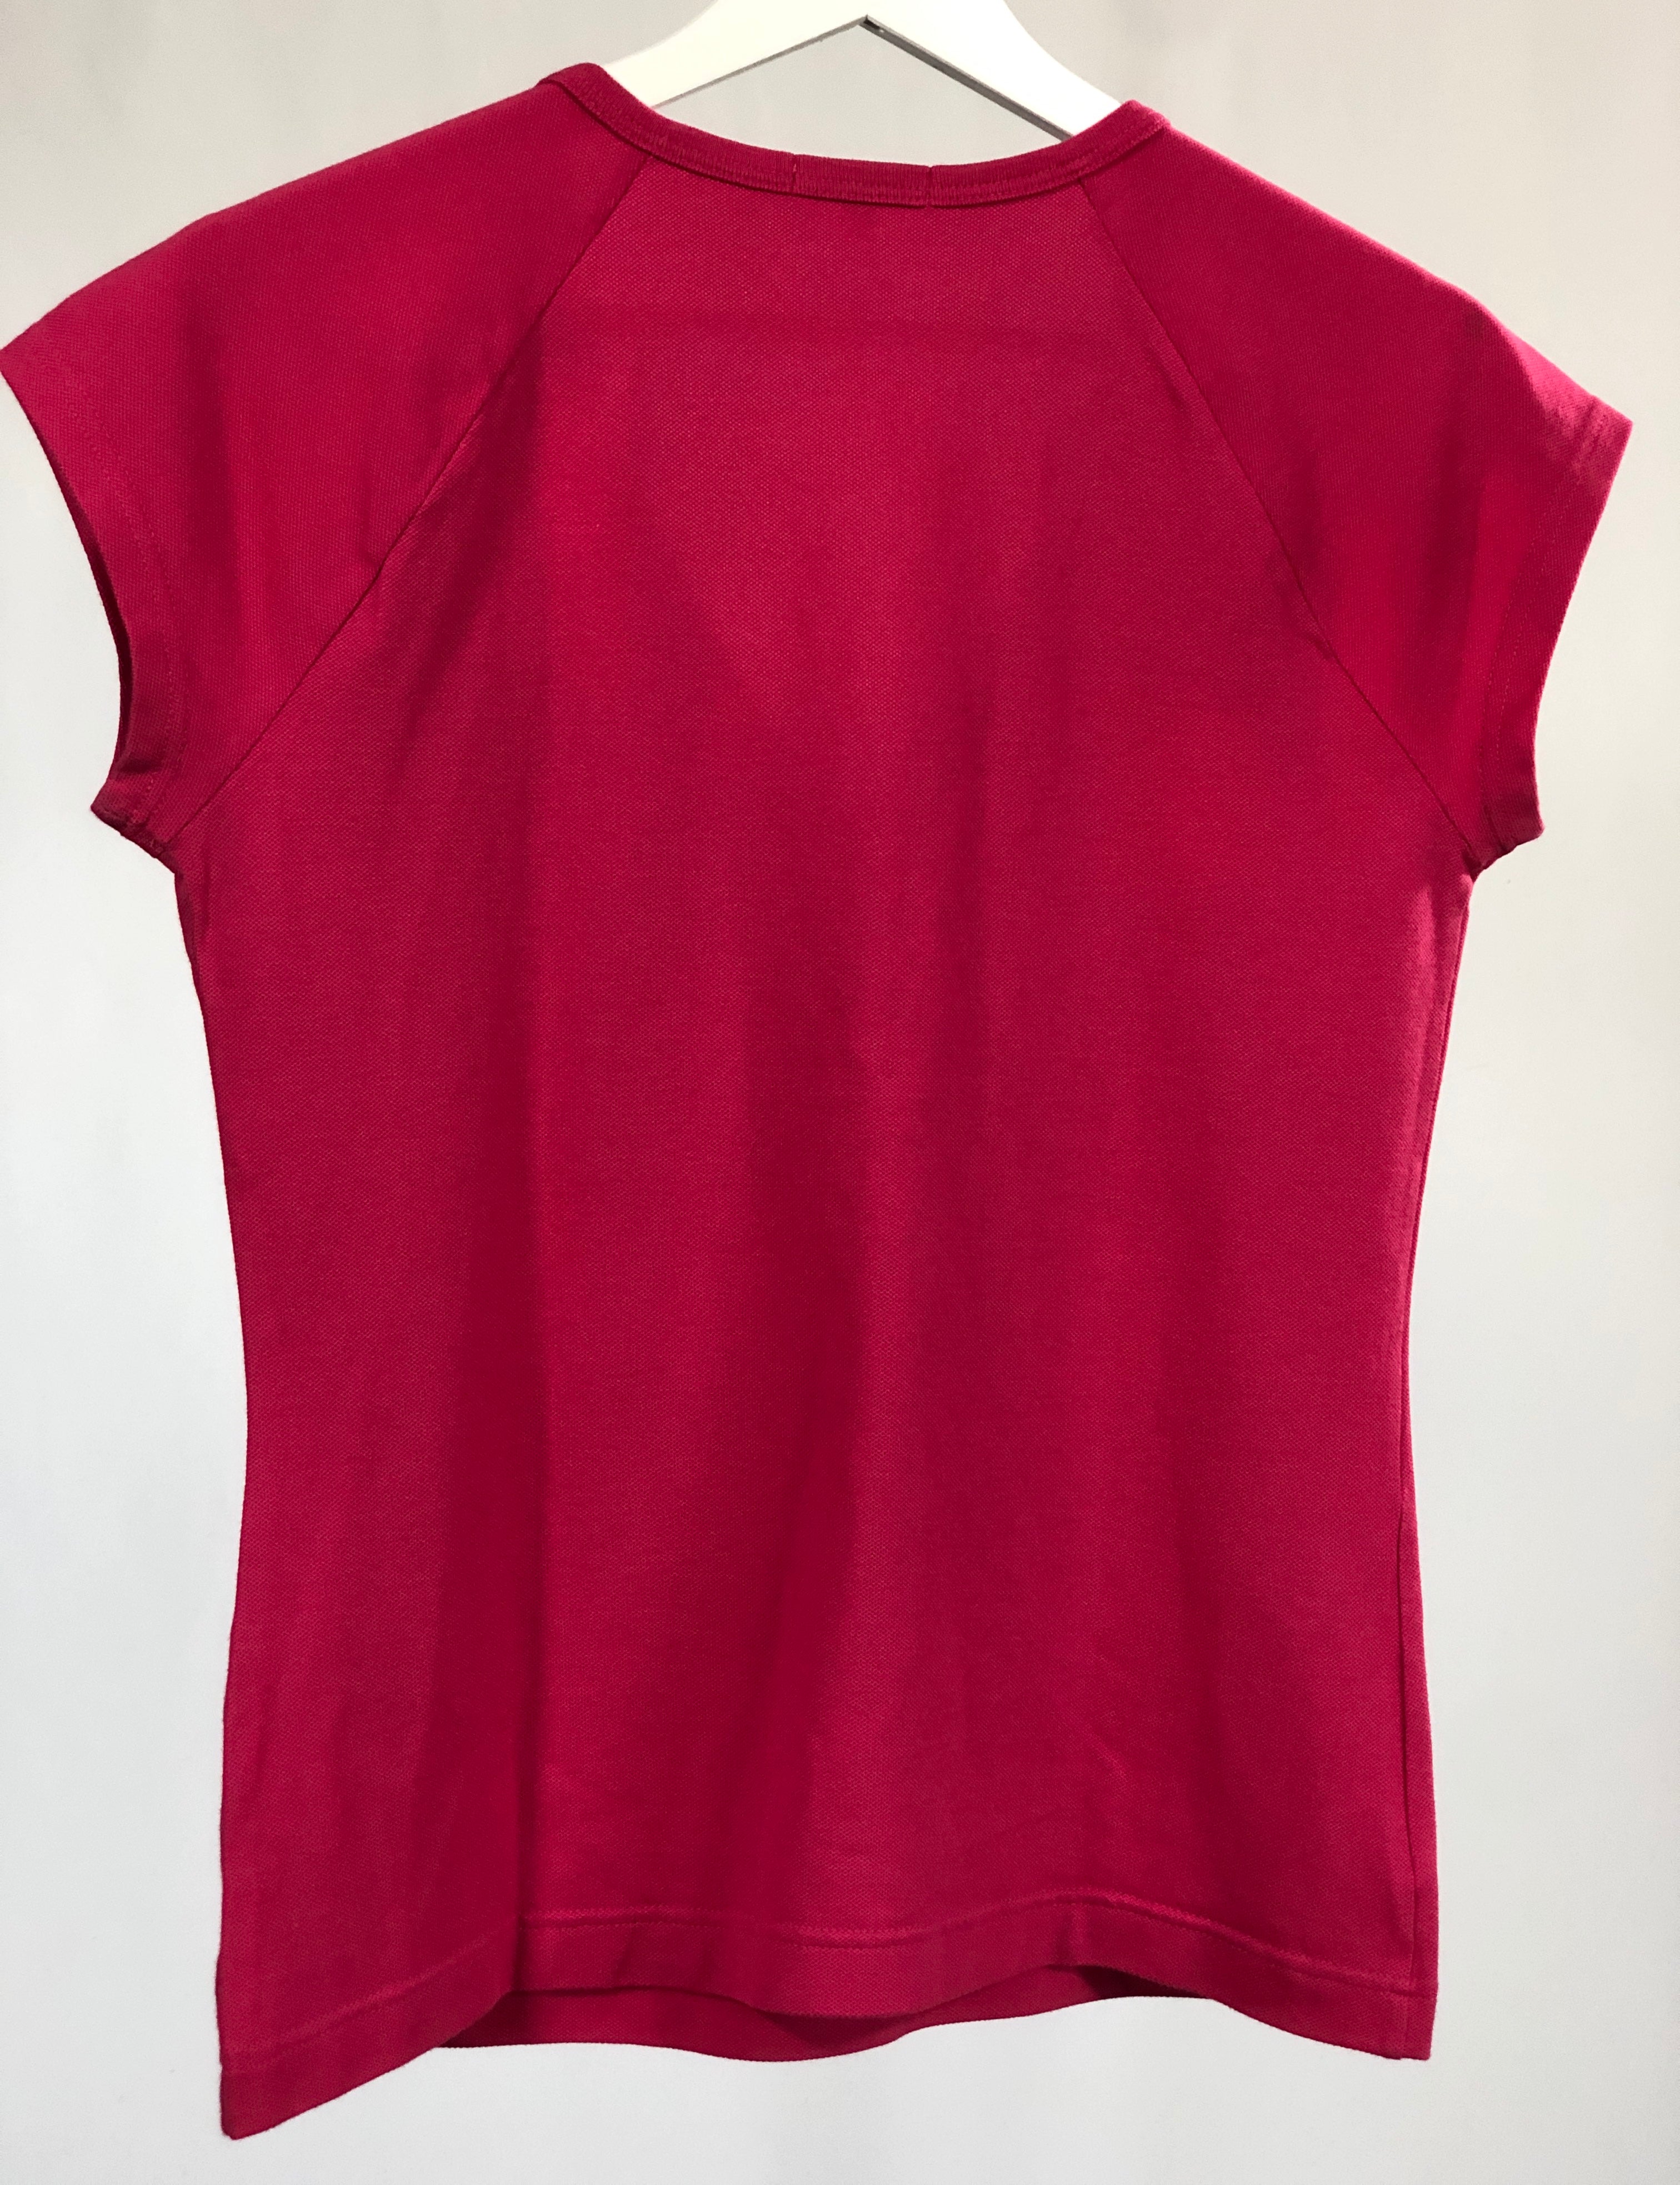 T-shirt vintage Lacoste rosa tg 40